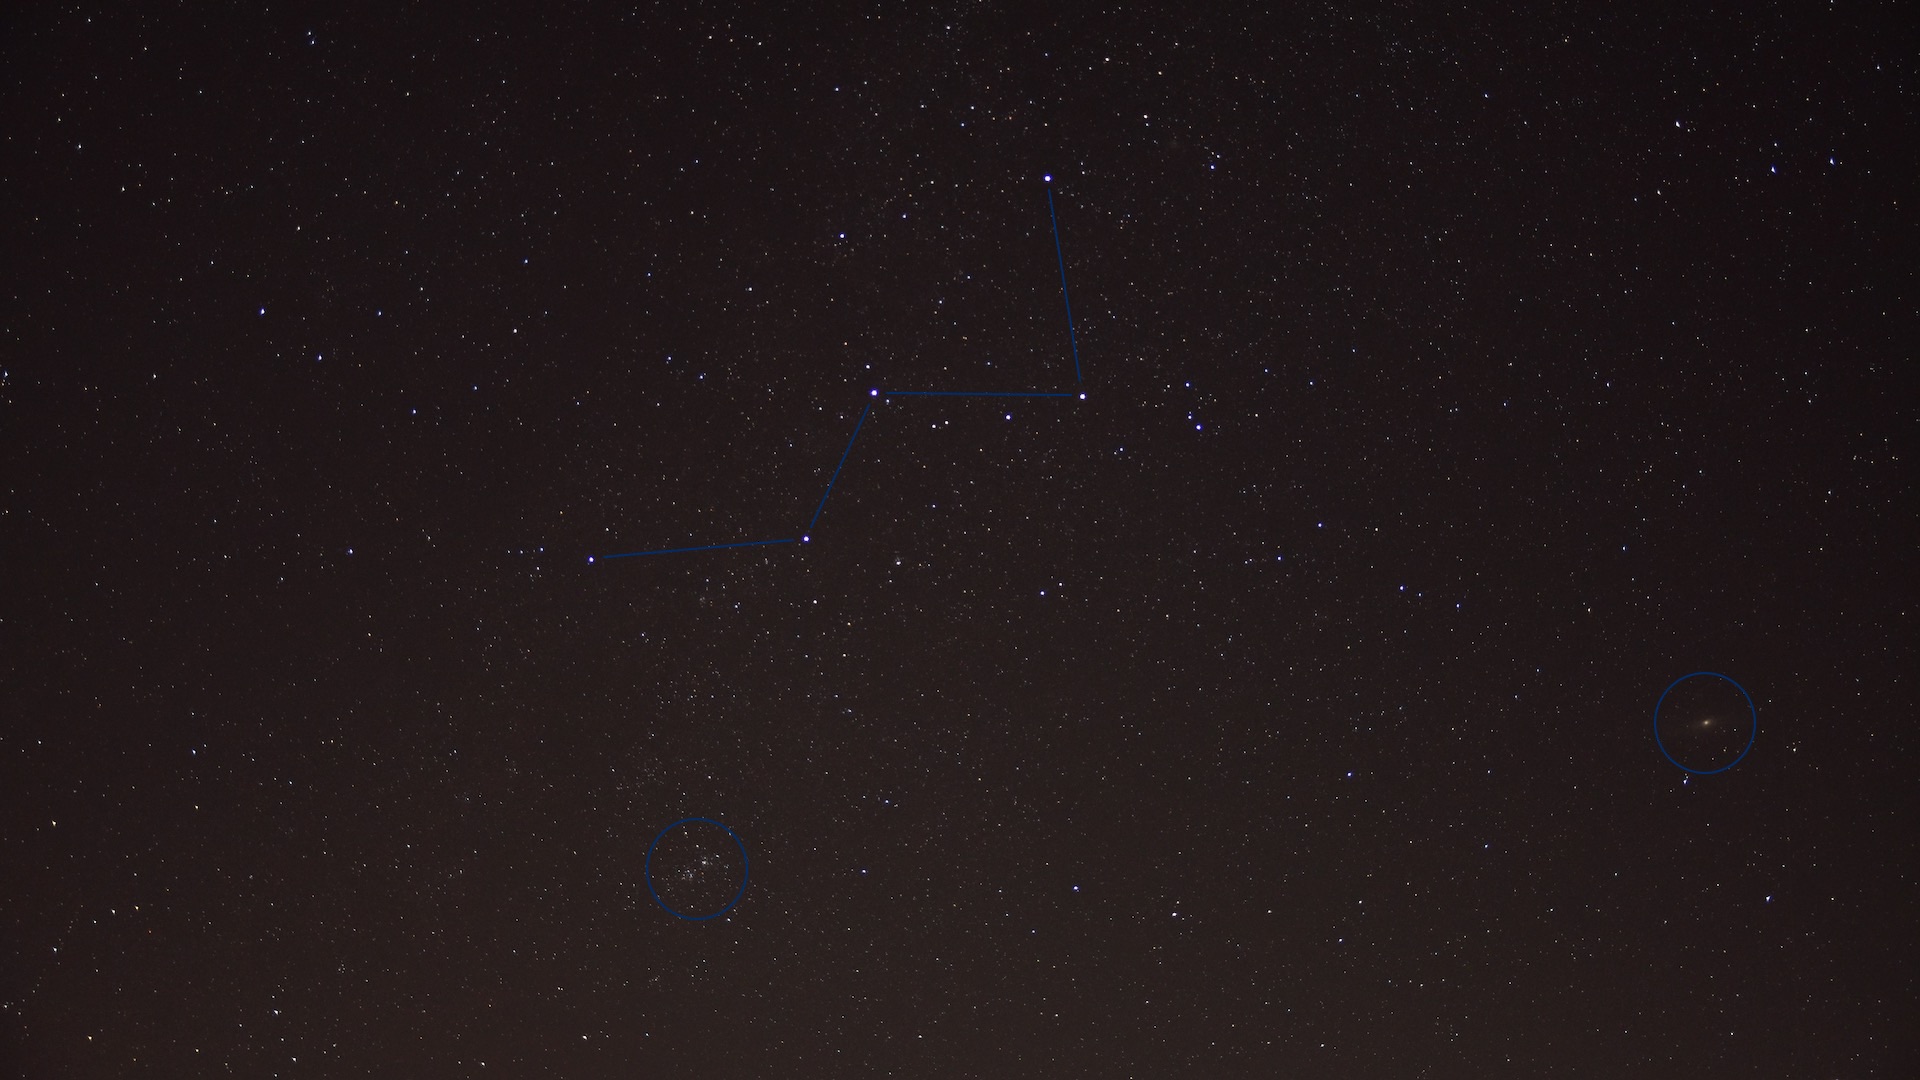 Het sterrenbeeld Cassiopeia. Onbewerkte enkele opname met 30 seconden belichting bij ISO 800. De dubbelcluster h & chi, het Andromeda-stelsel en vele andere deepsky-objecten zijn zichtbaar. Foto: Marcus Schenk